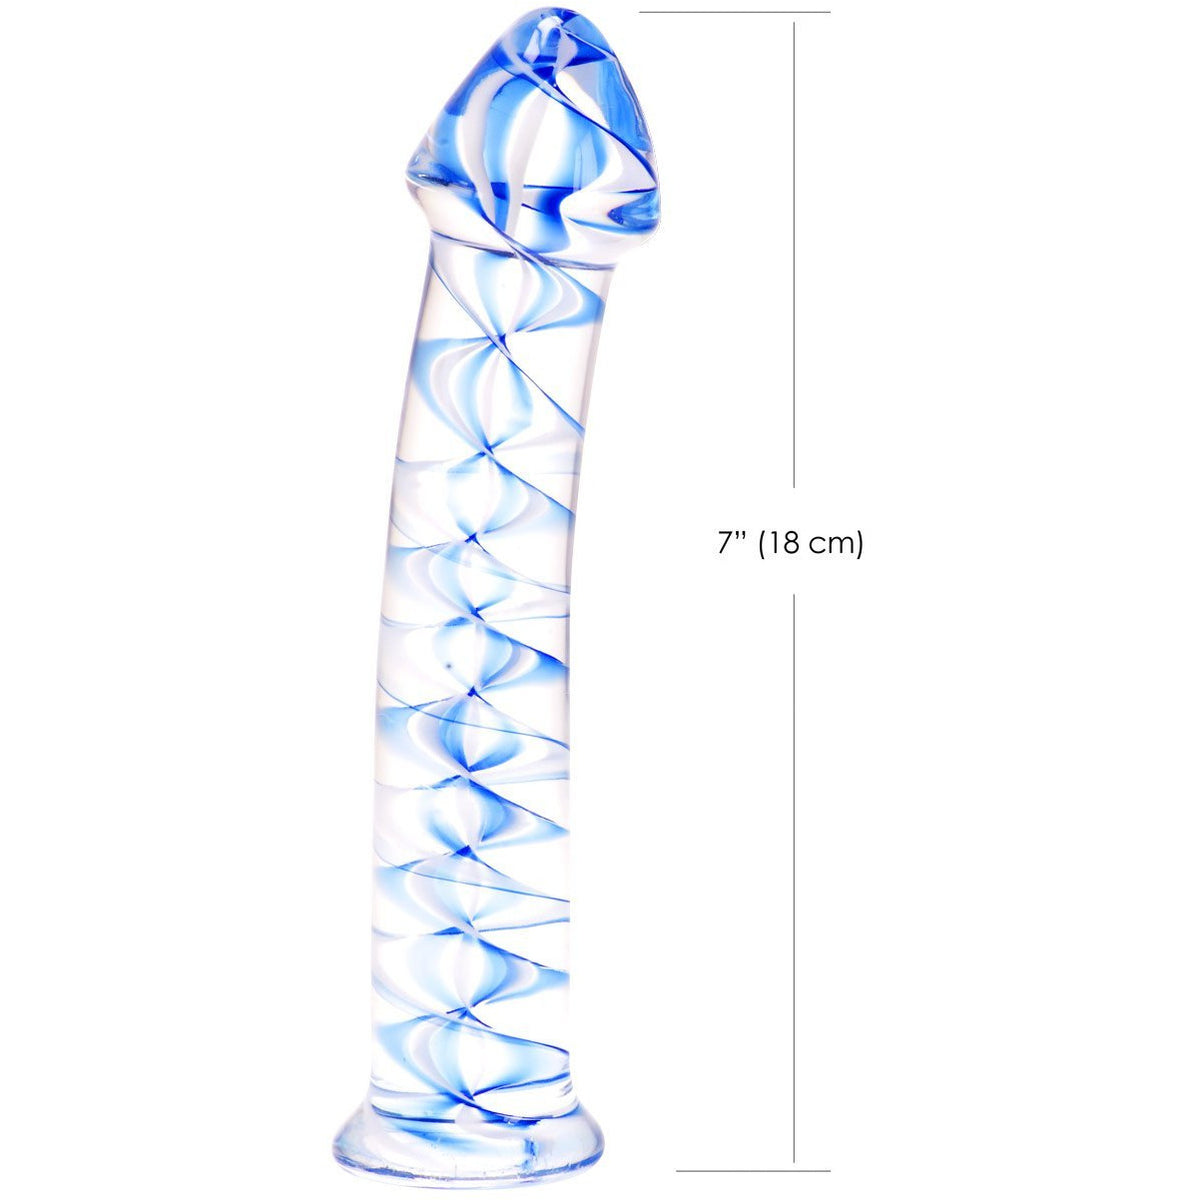 Kinx Spiralled Ice - Blue